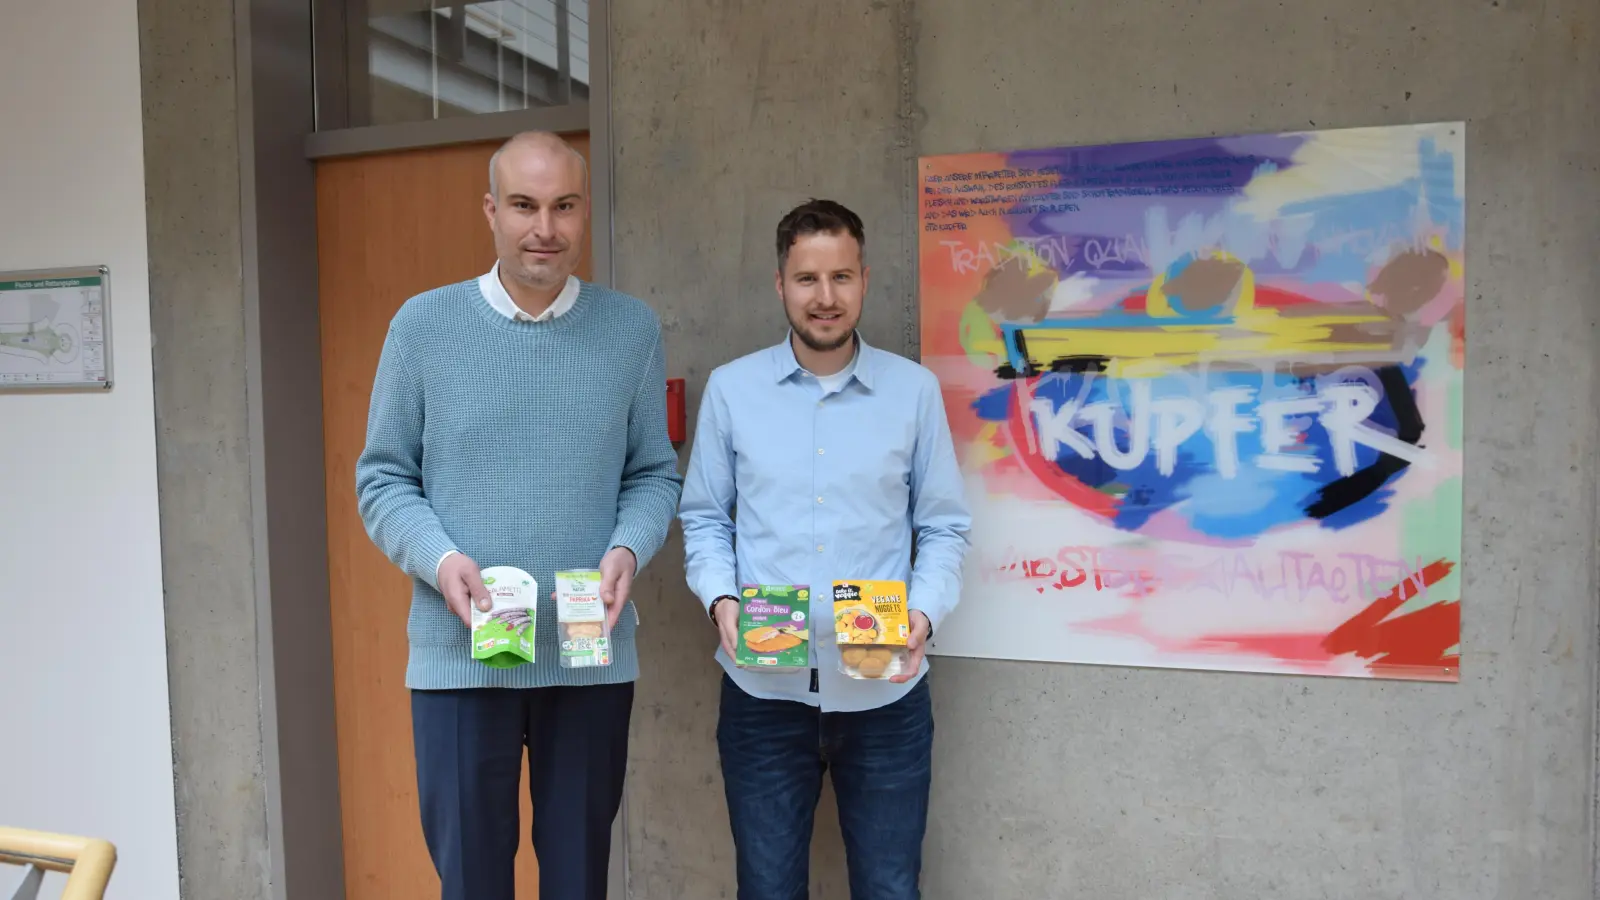 Johannes und Max Kupfer (von links) bilden den Vorstand des Heilsbronner Unternehmens. Sie wollen den Familienbetrieb zu einem Lebensmittelproduzenten weiterentwickeln. (Foto: Florian Schwab)